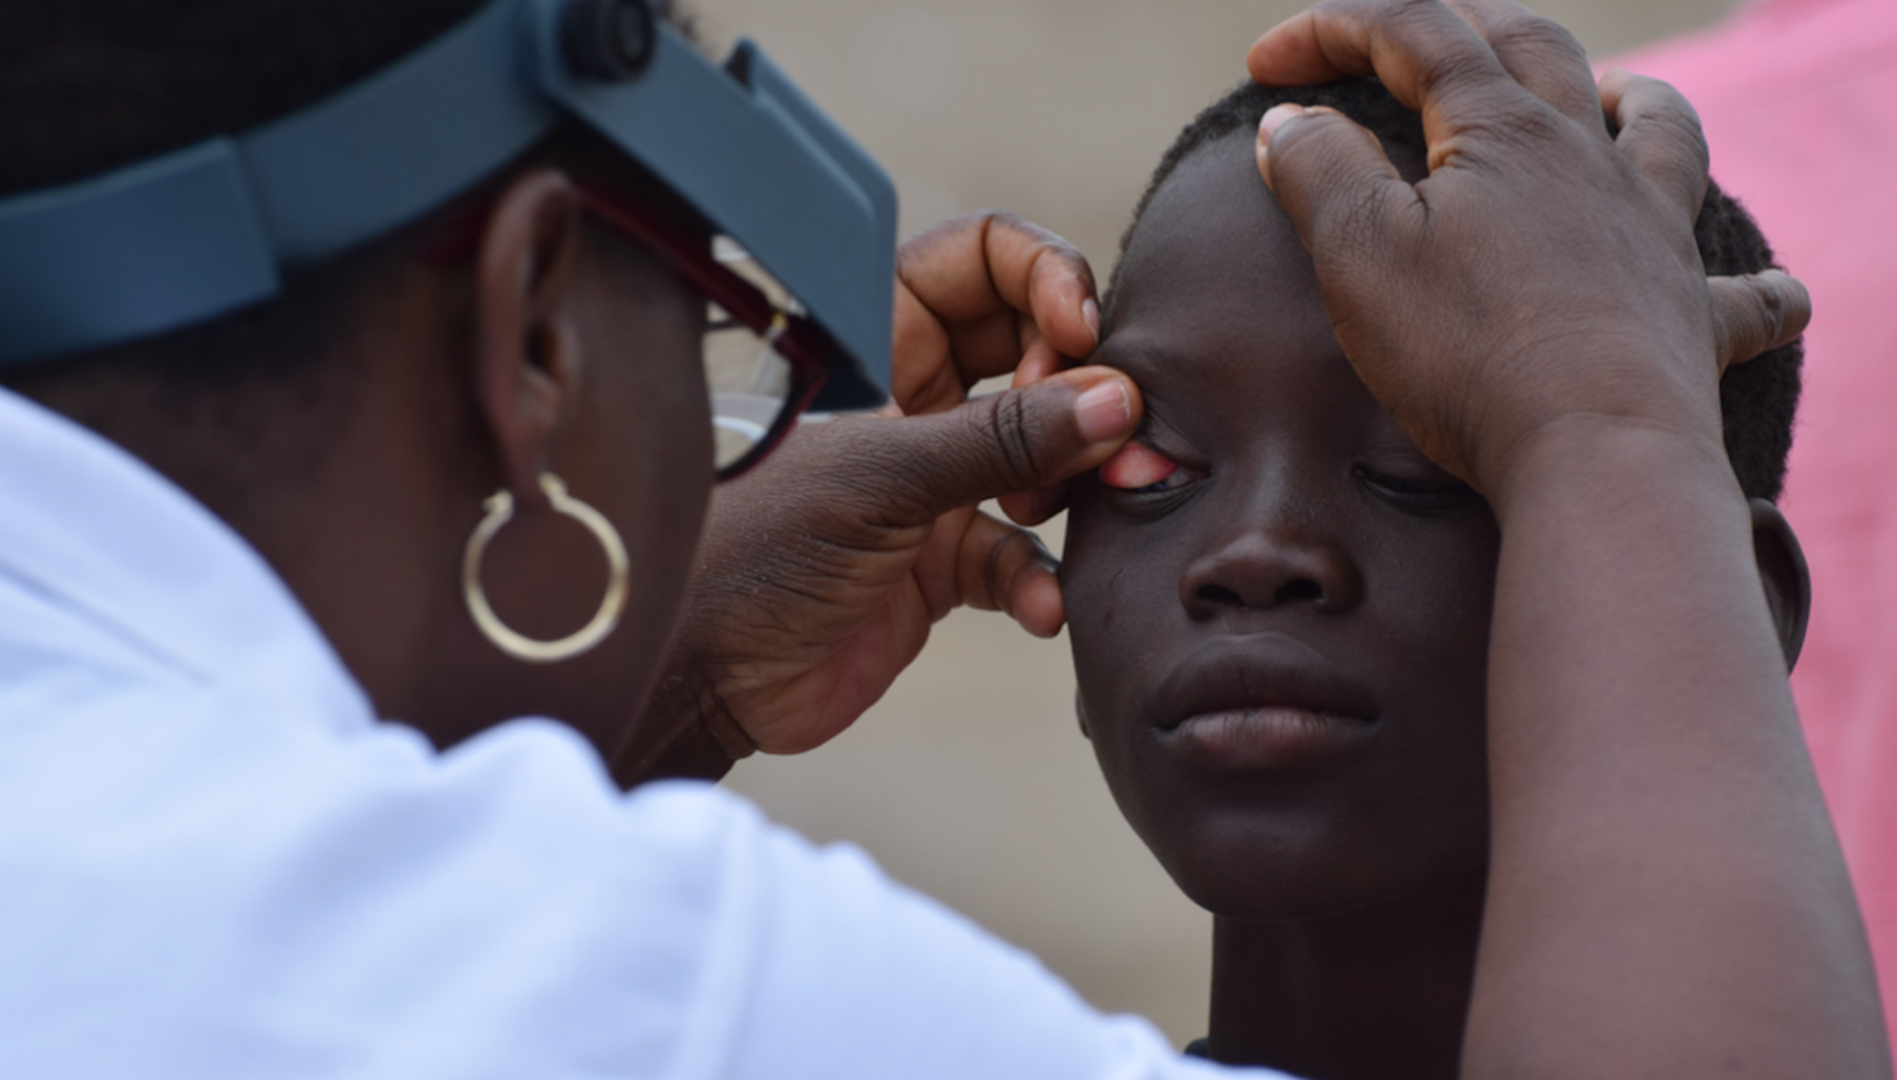 Le Bénin et le Mali éliminent le trachome qui provoque la cécité